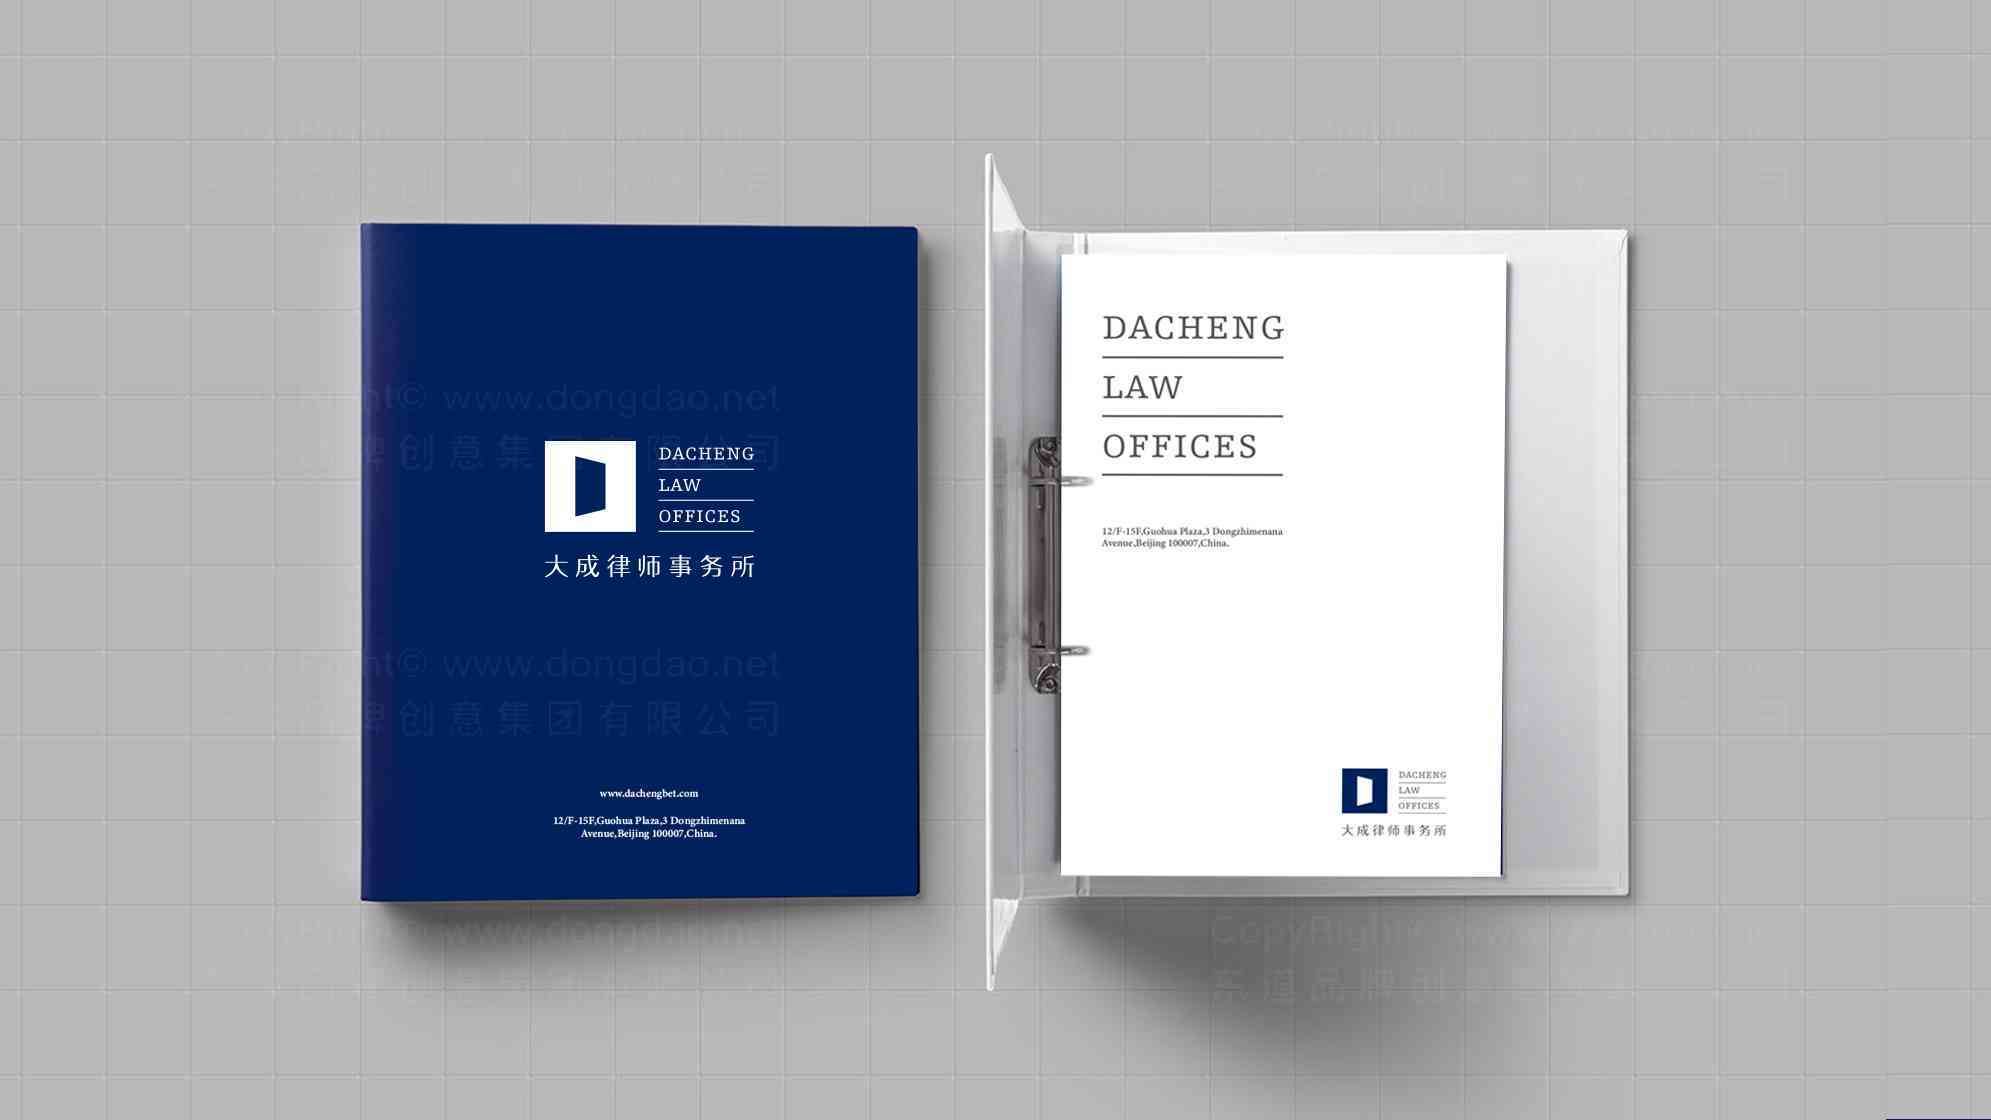 大成律师事务所标志设计图片素材_2